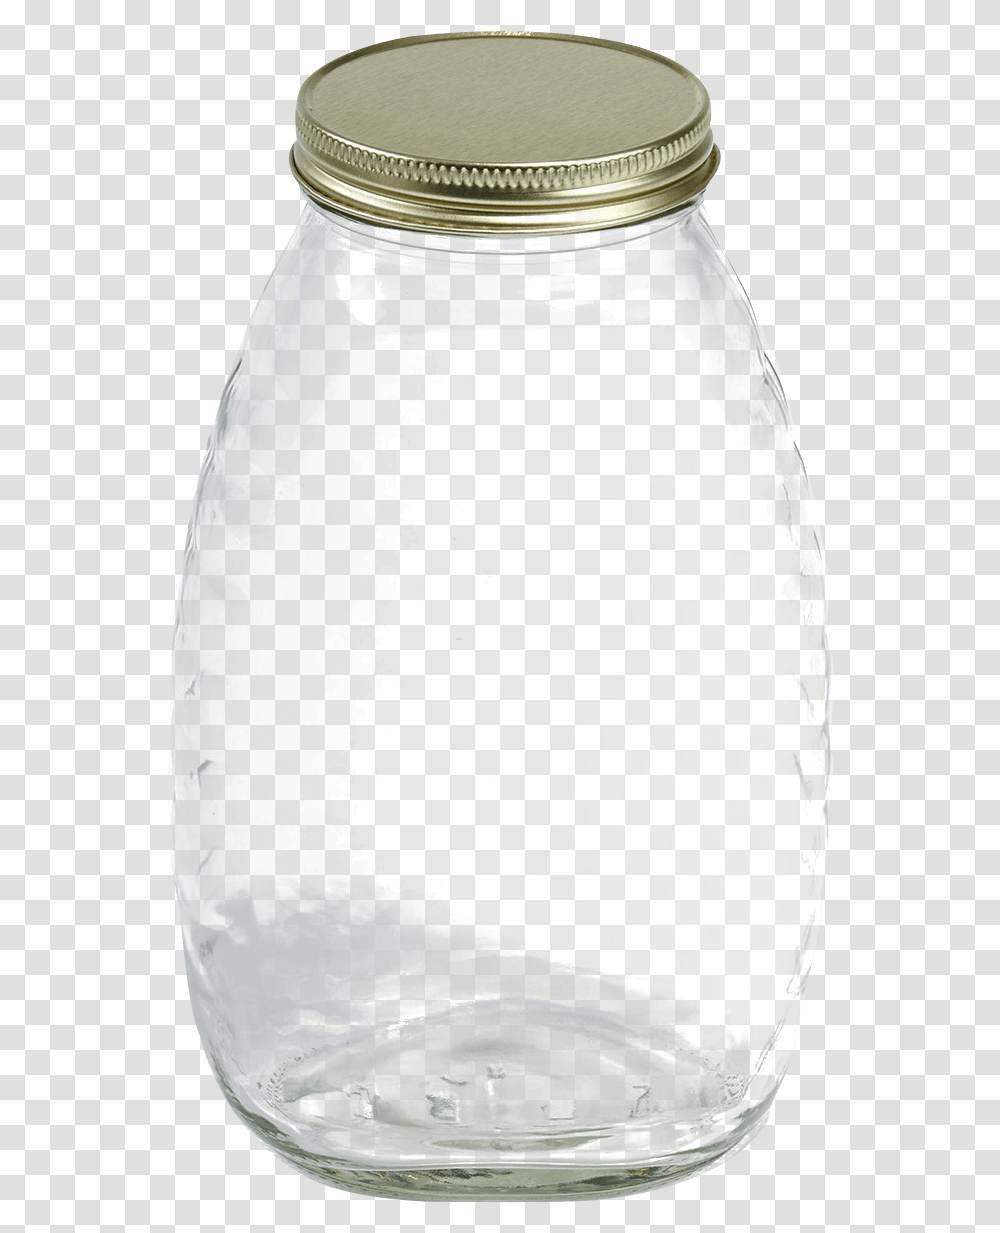 Jar Images Glass Jar, Milk, Beverage, Vase, Pottery Transparent Png